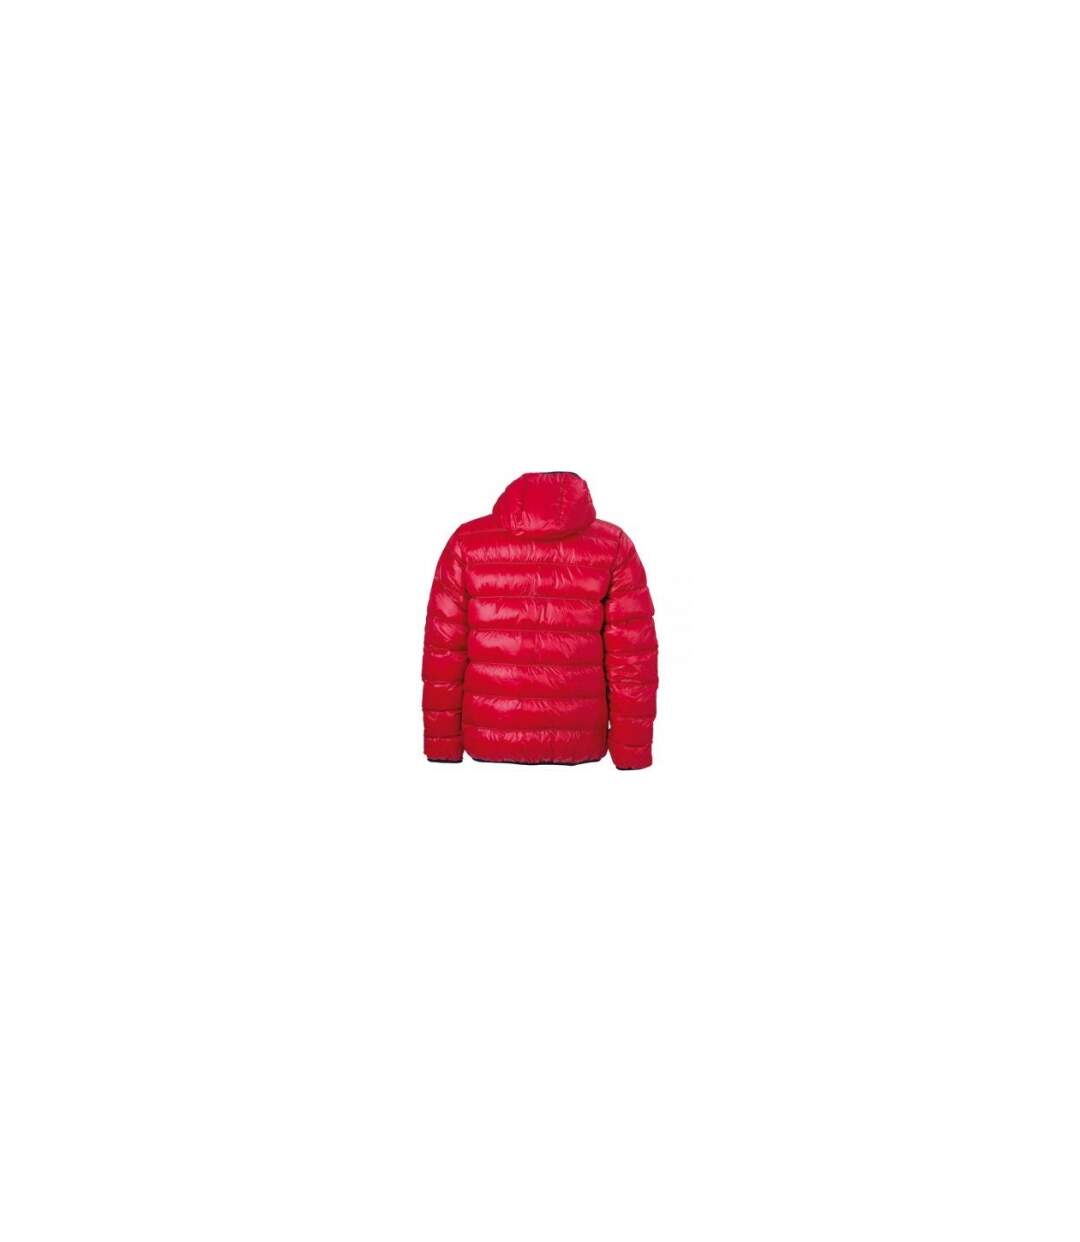 Veste duvet à capuche - doudoune anorak homme - JN1060 - rouge